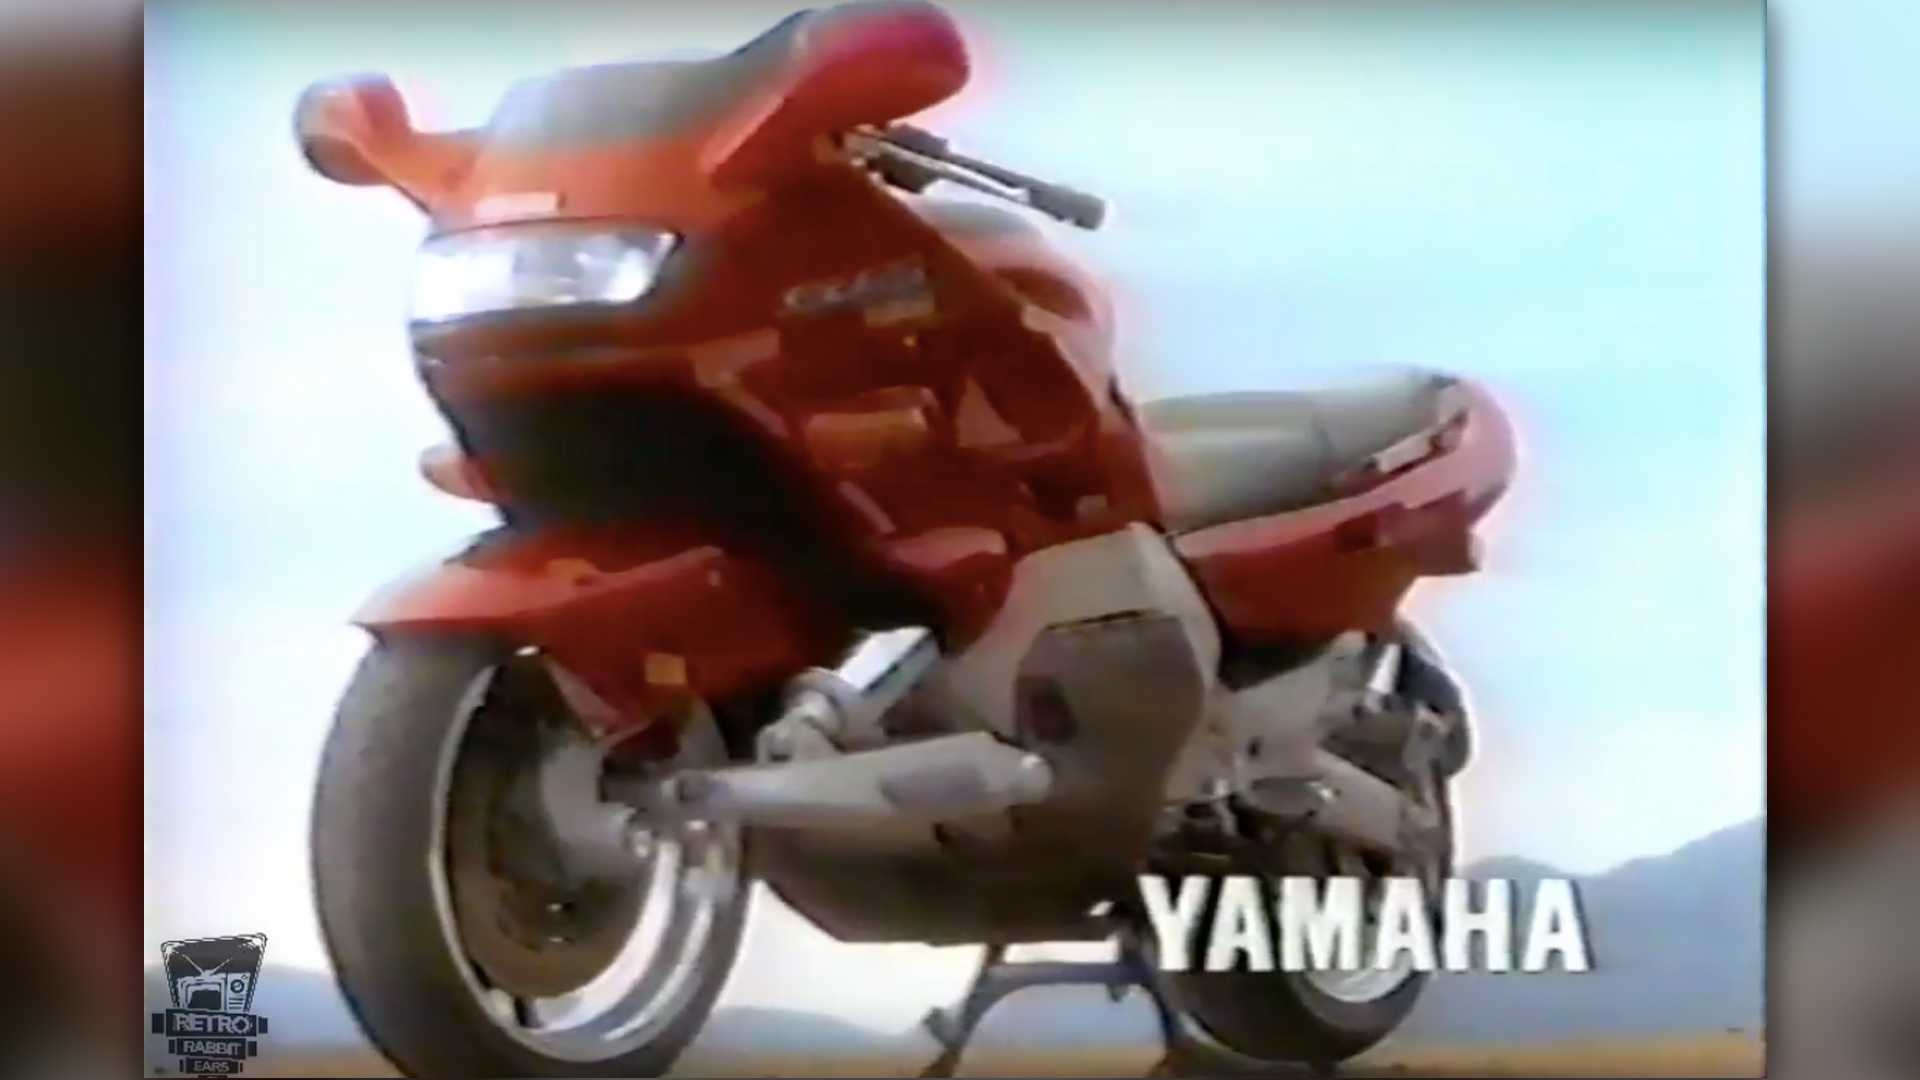 Технические характеристики мотоцикла yamaha yzf-r1 — краткий обзор легенды мотоциклетного спорта